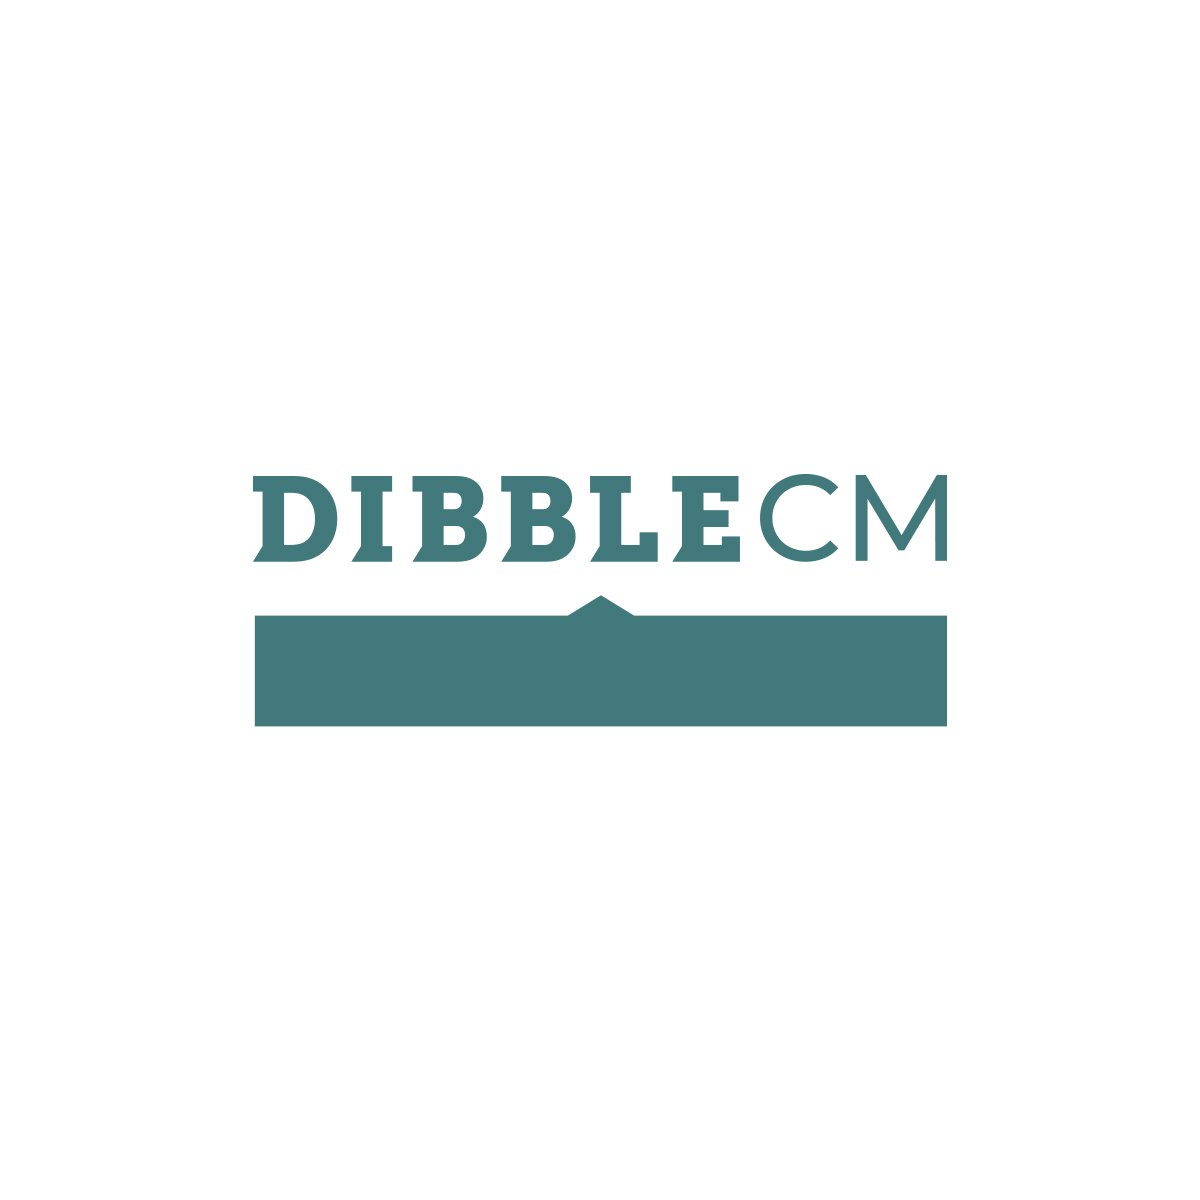 DibbleCM logo.jpg